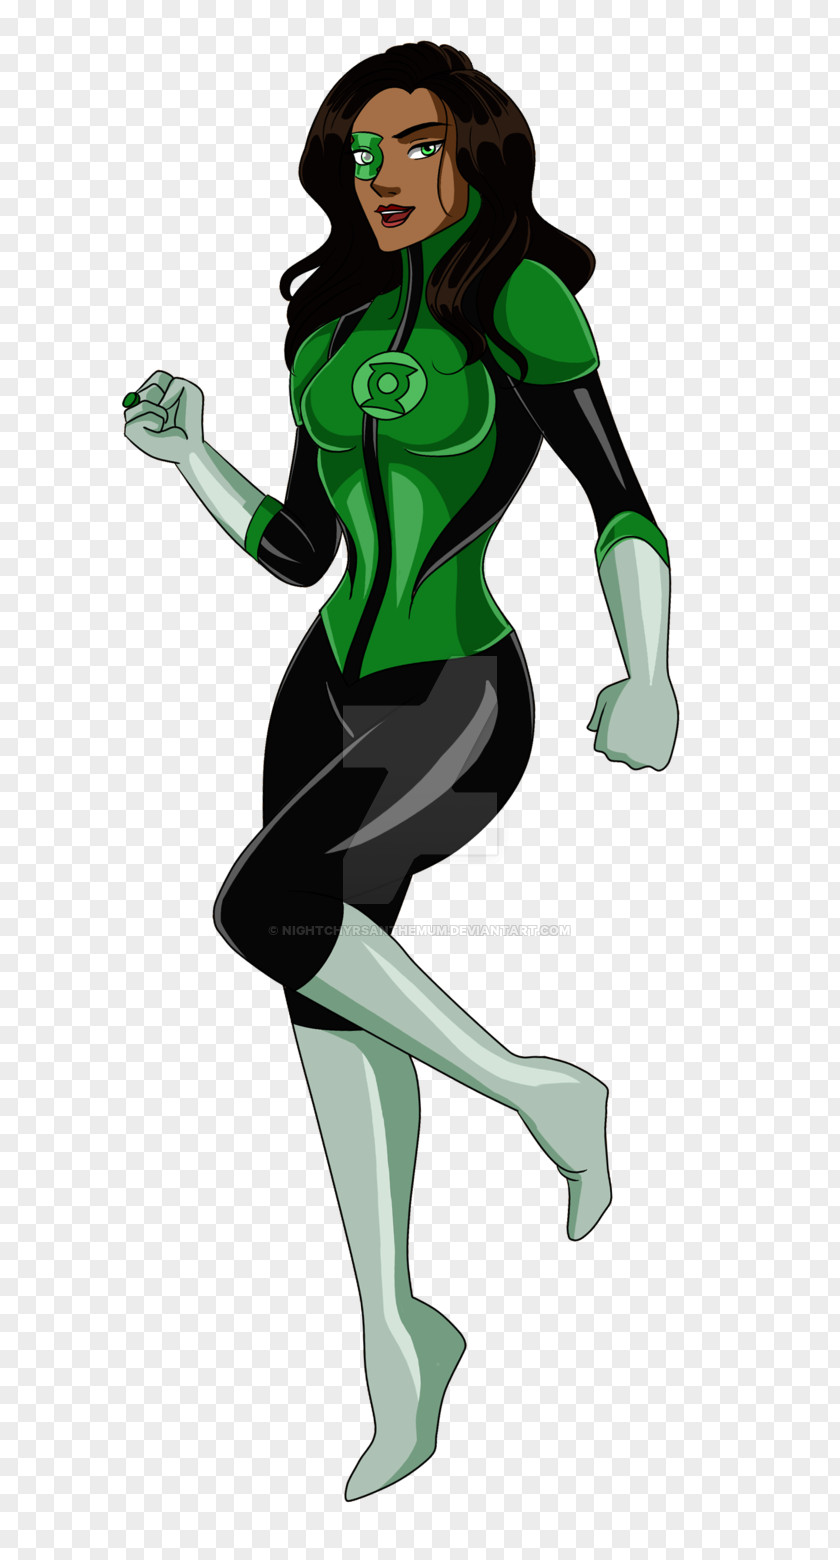 The Green Lantern Jessica Cruz Superhero Batman John Stewart PNG